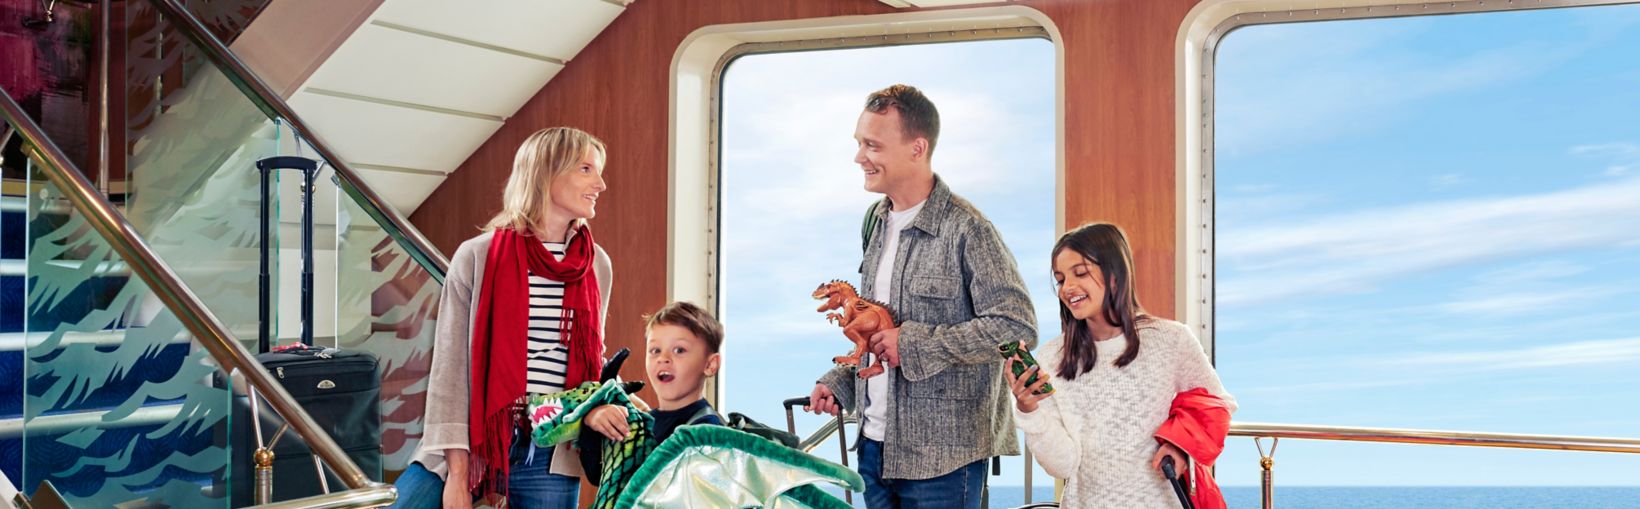 Familia llevando equipaje y un dragón subiendo escaleras a su cabina en un ferry 